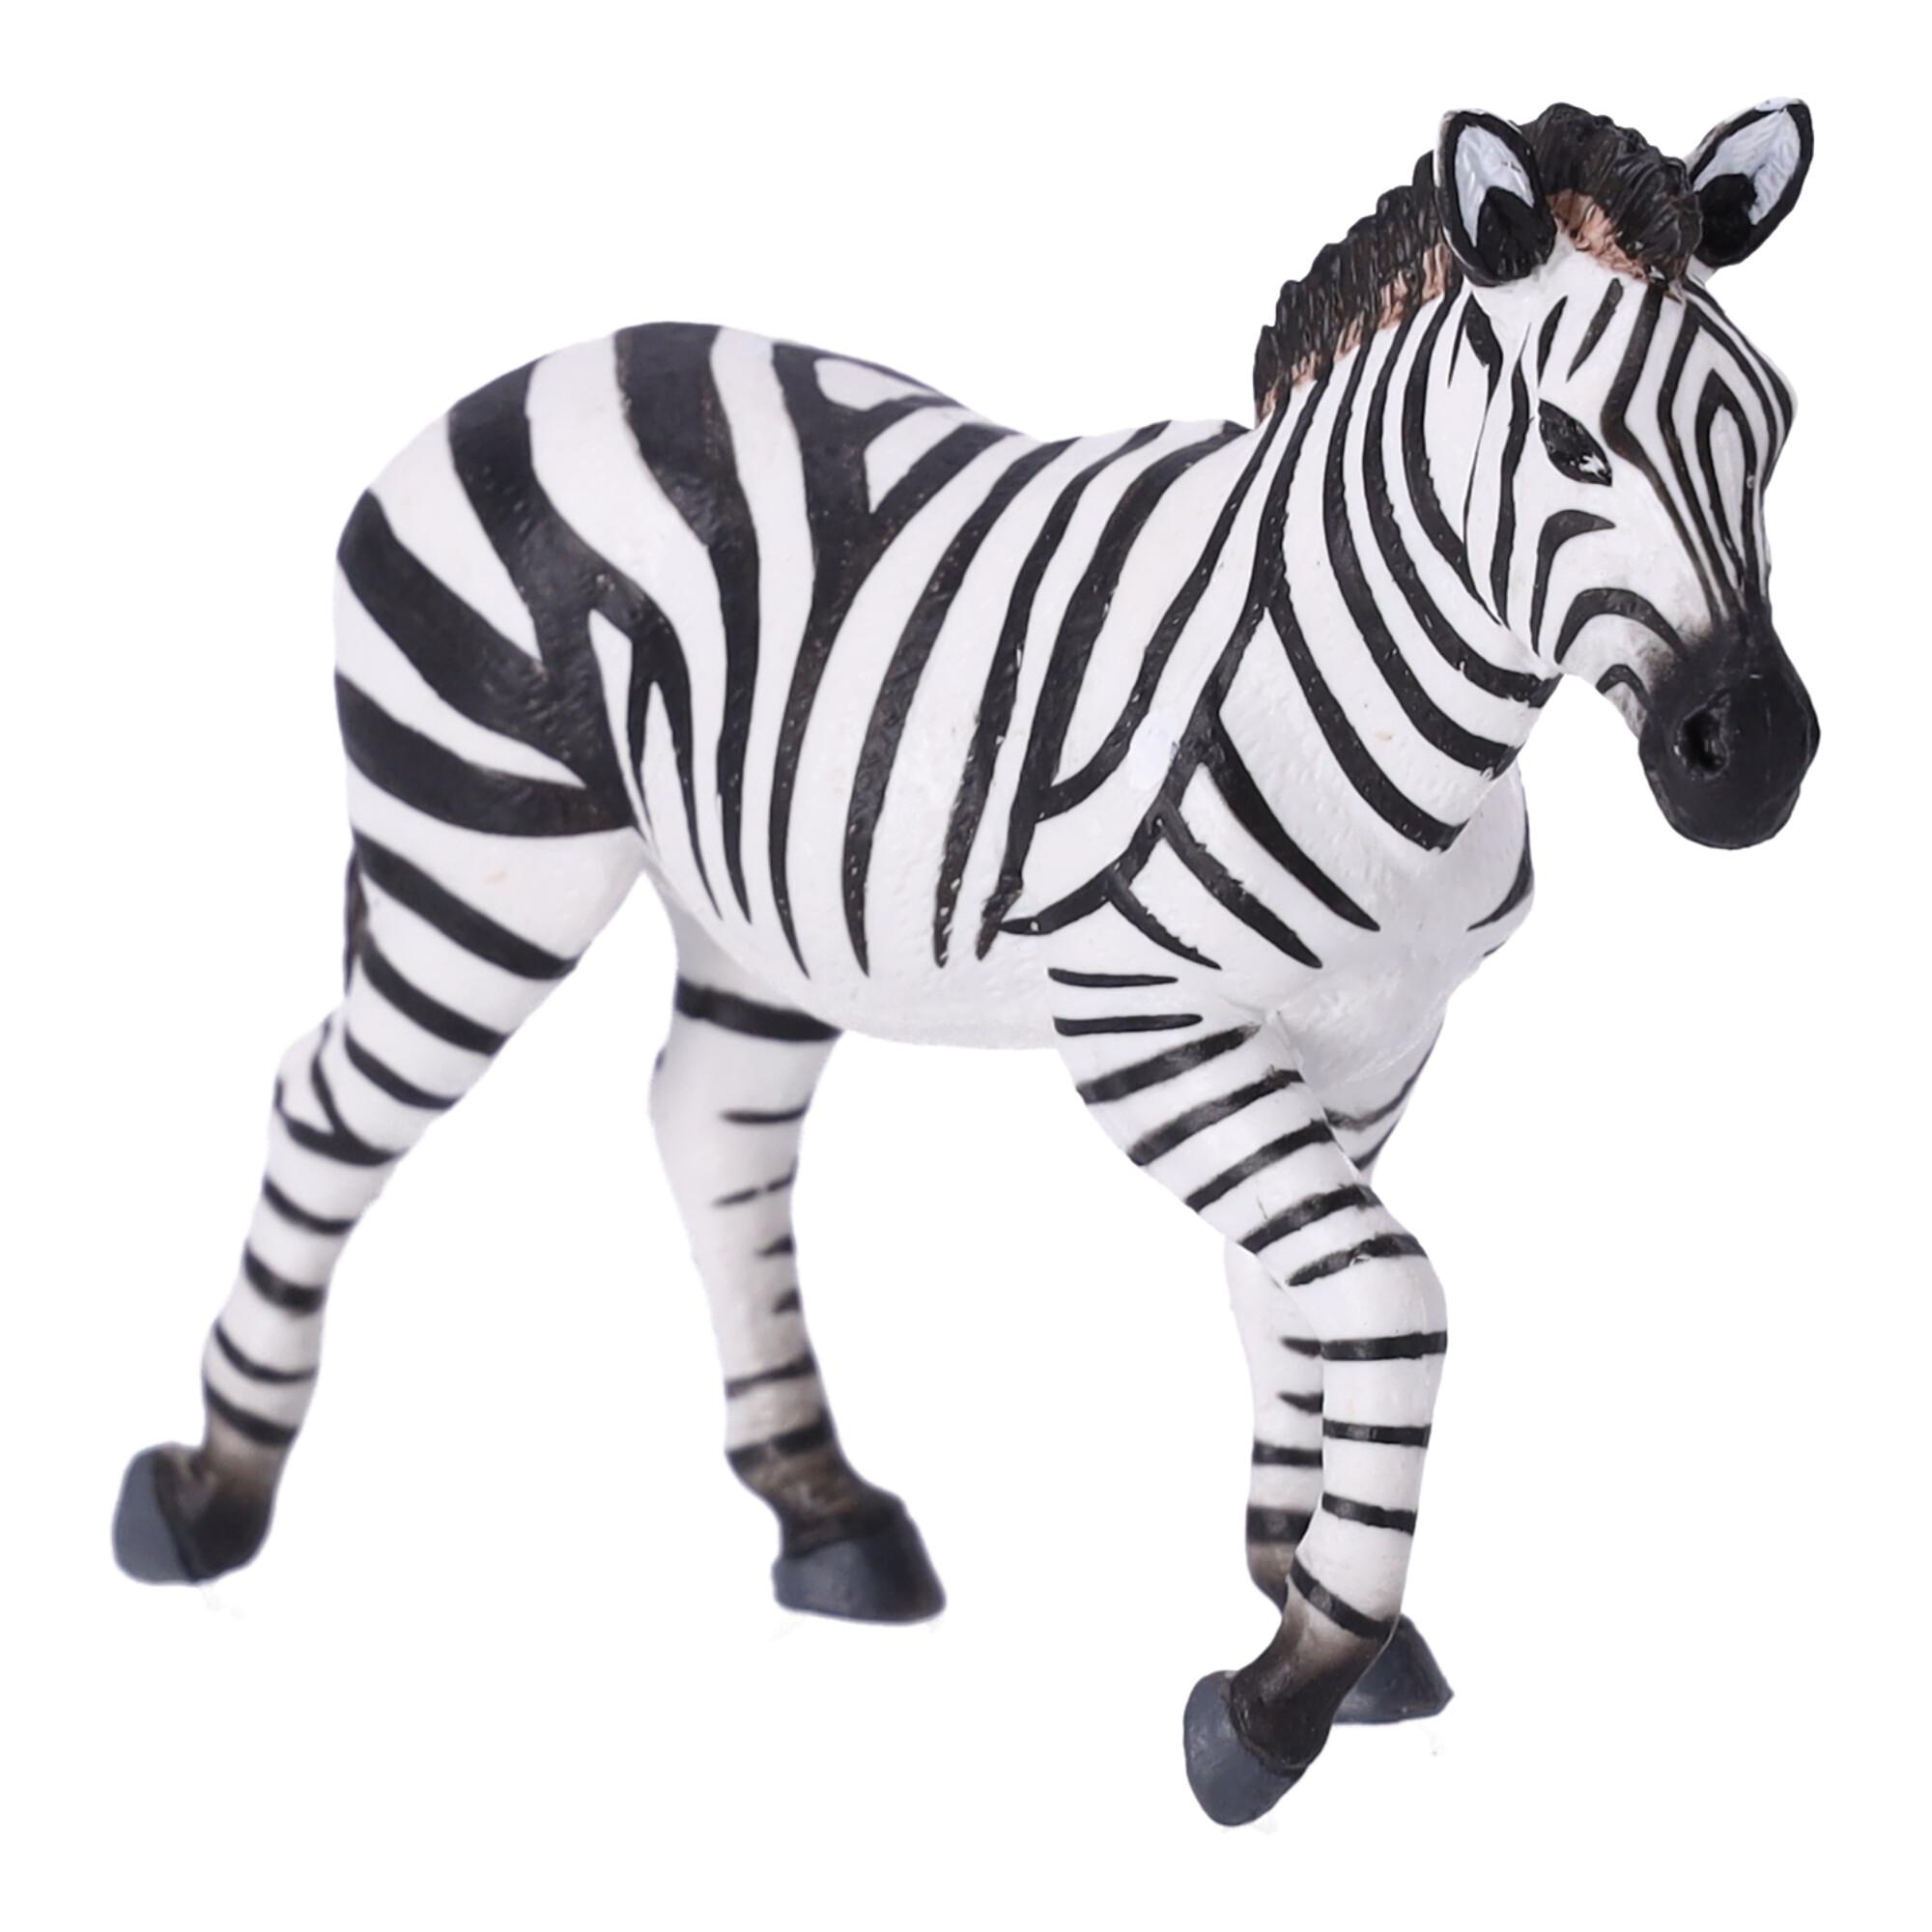 Collectible figurine Zebra male, Papo